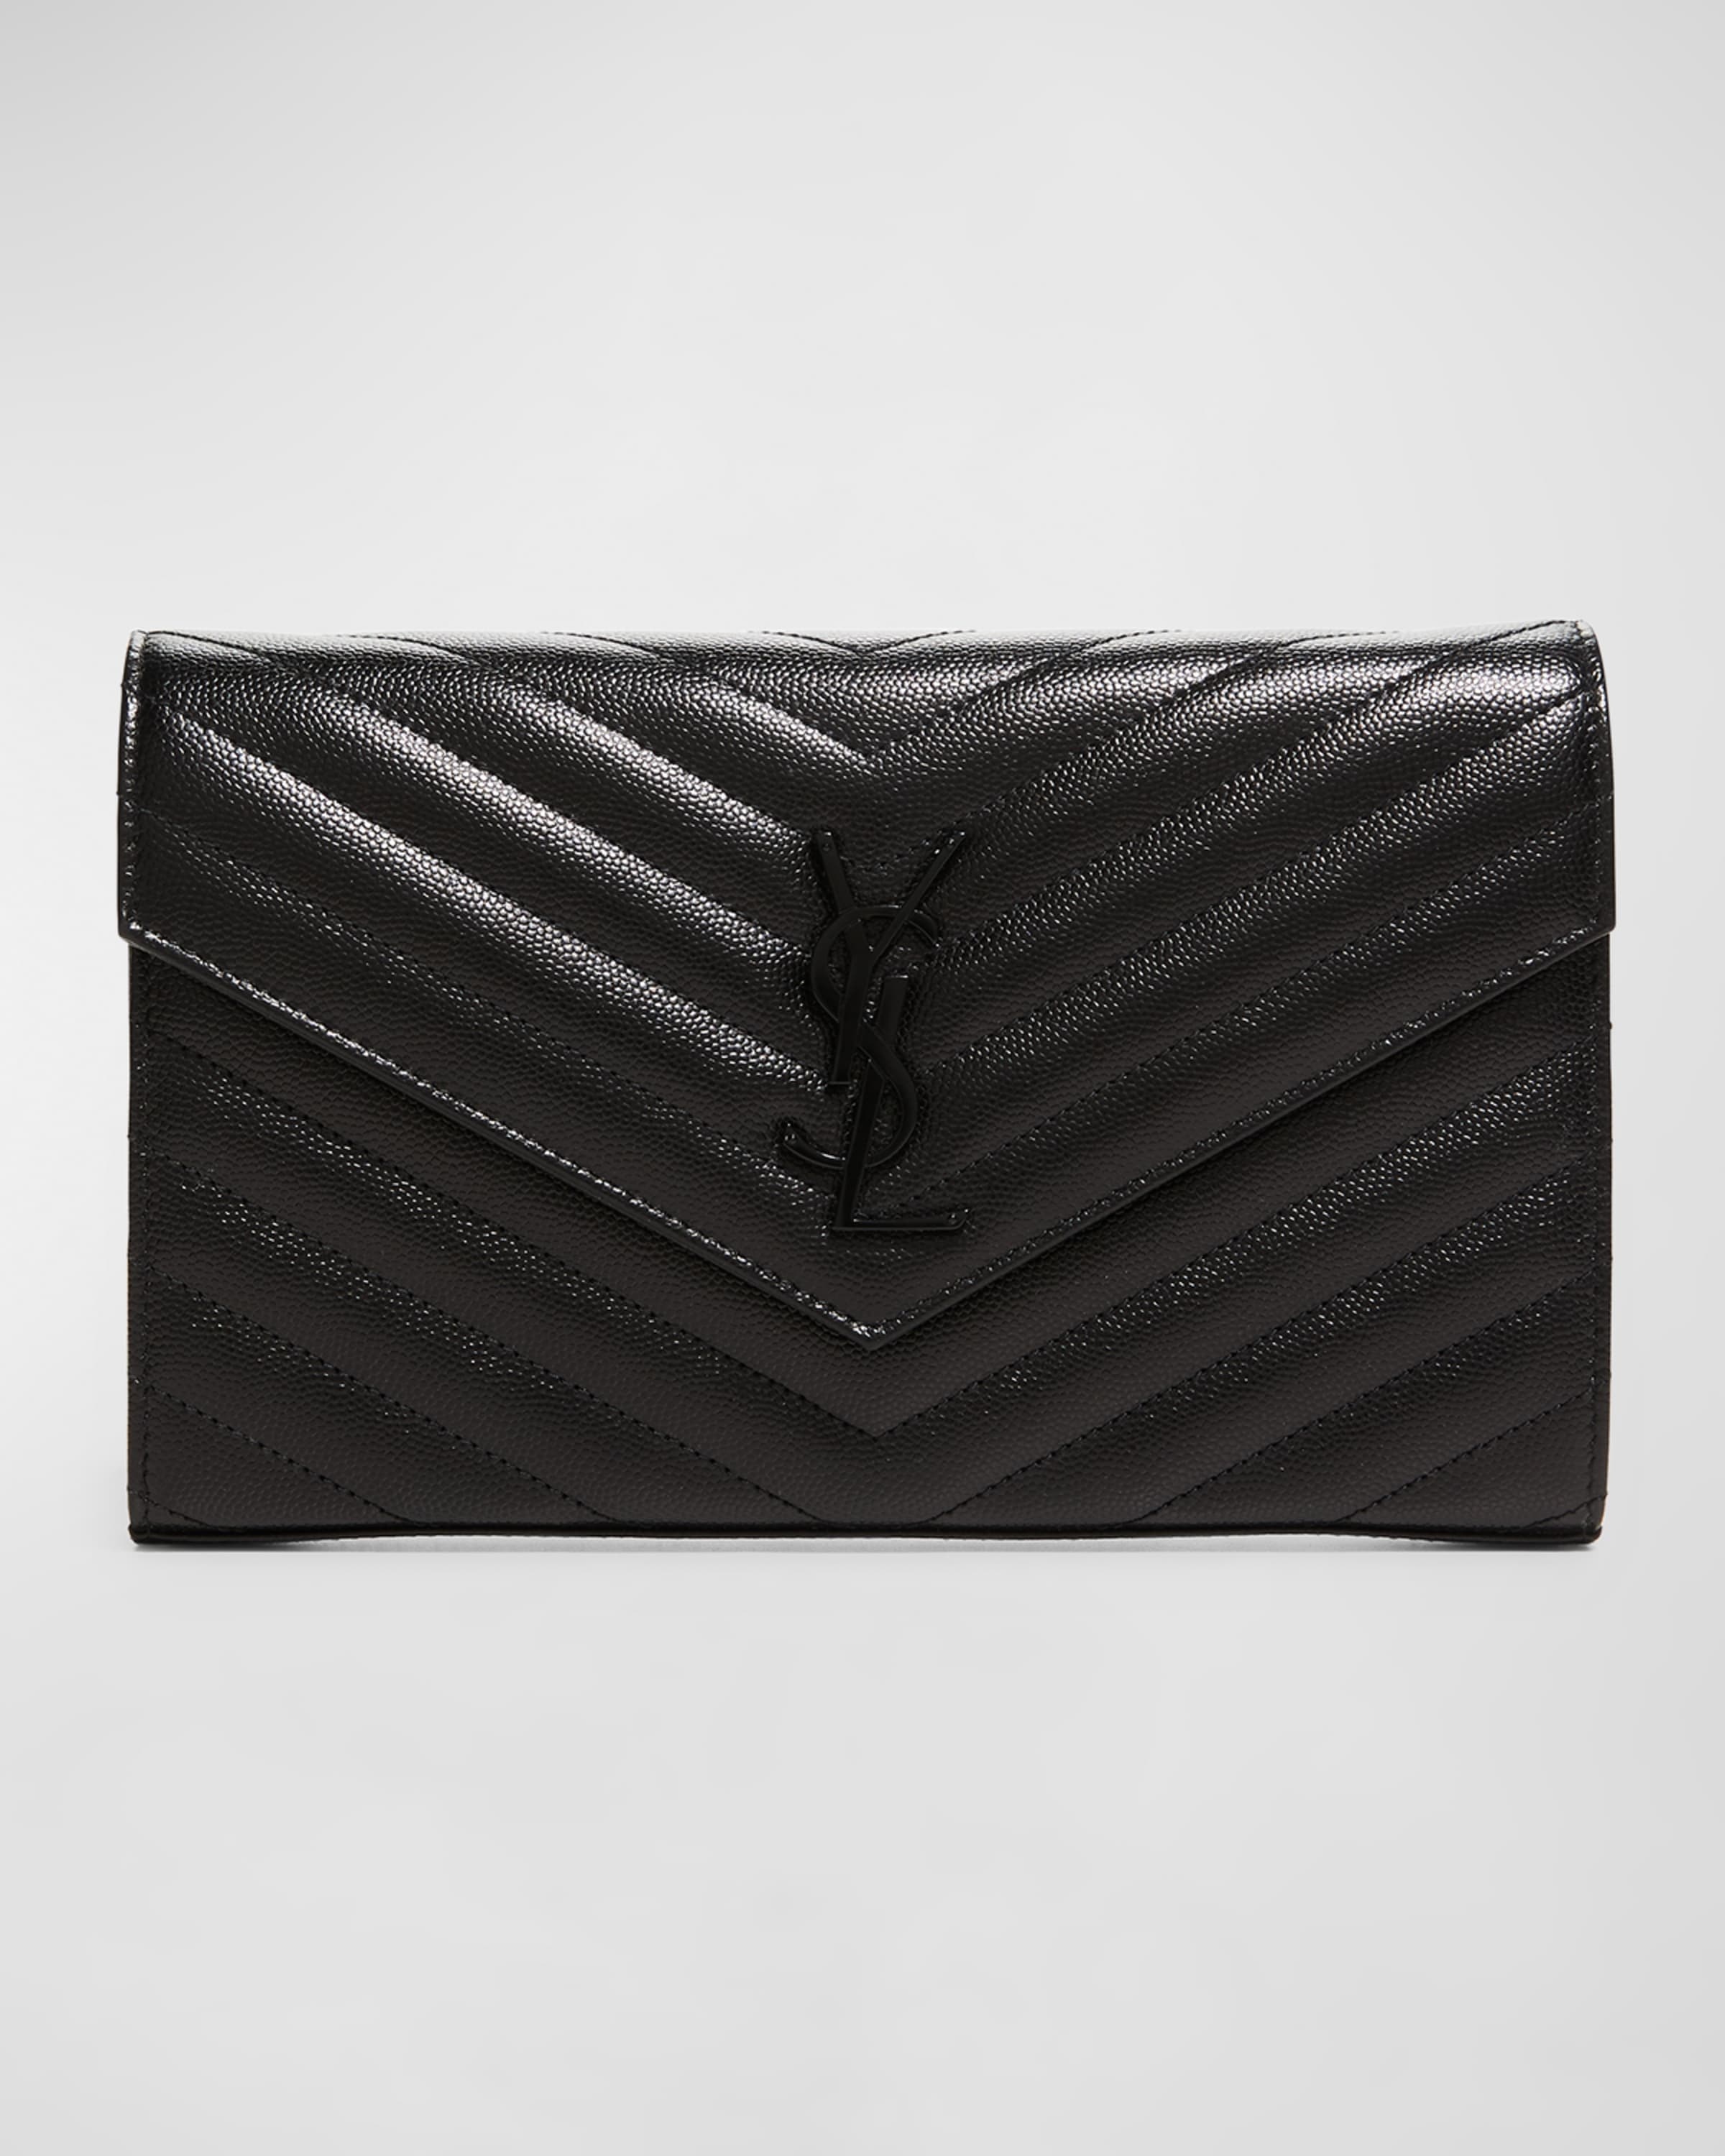 Monogramme Grain de Poudre Leather Wallet-on-Chain, Black Hardware - 1